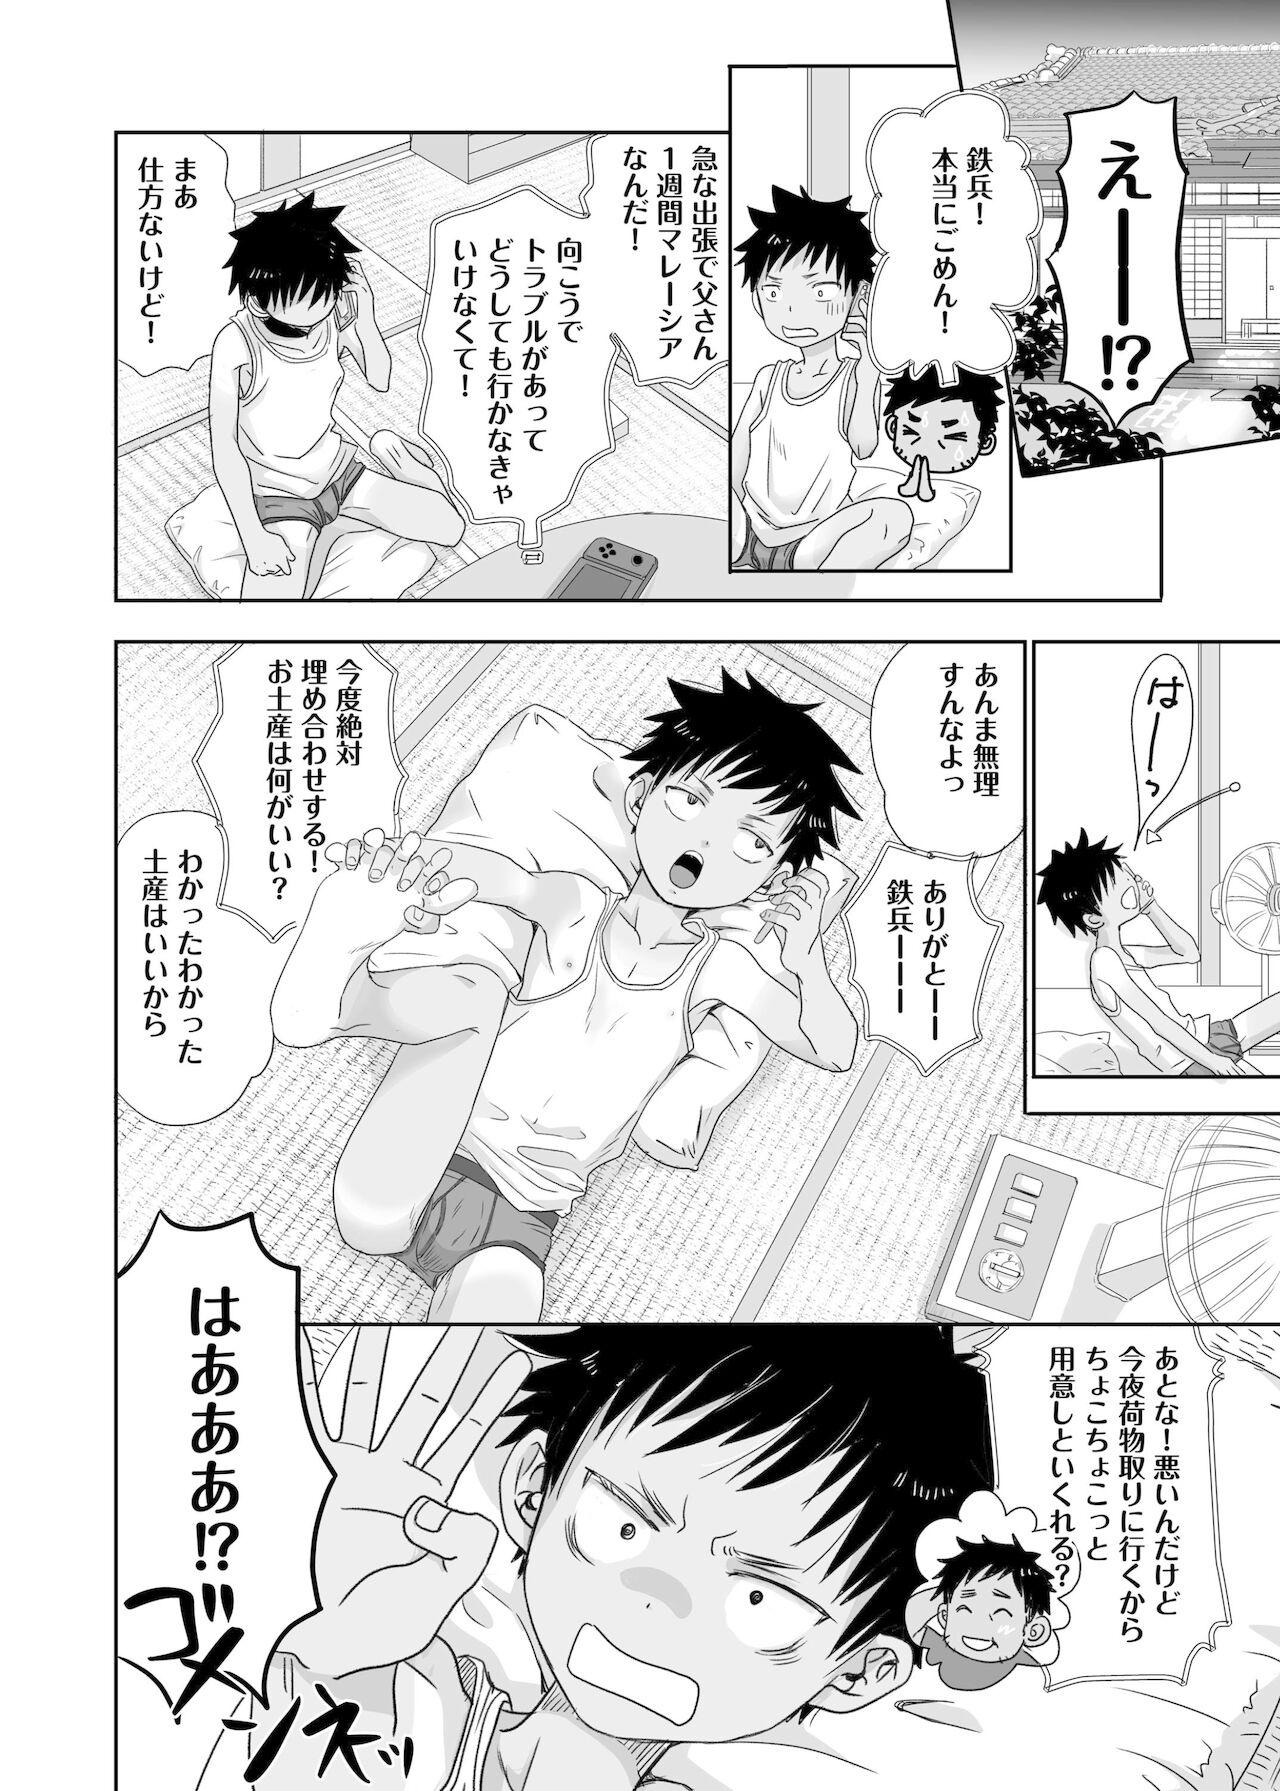 Lick Tonari no oniisan no Karada ga sugokute ki ni naru. Workout - Page 6